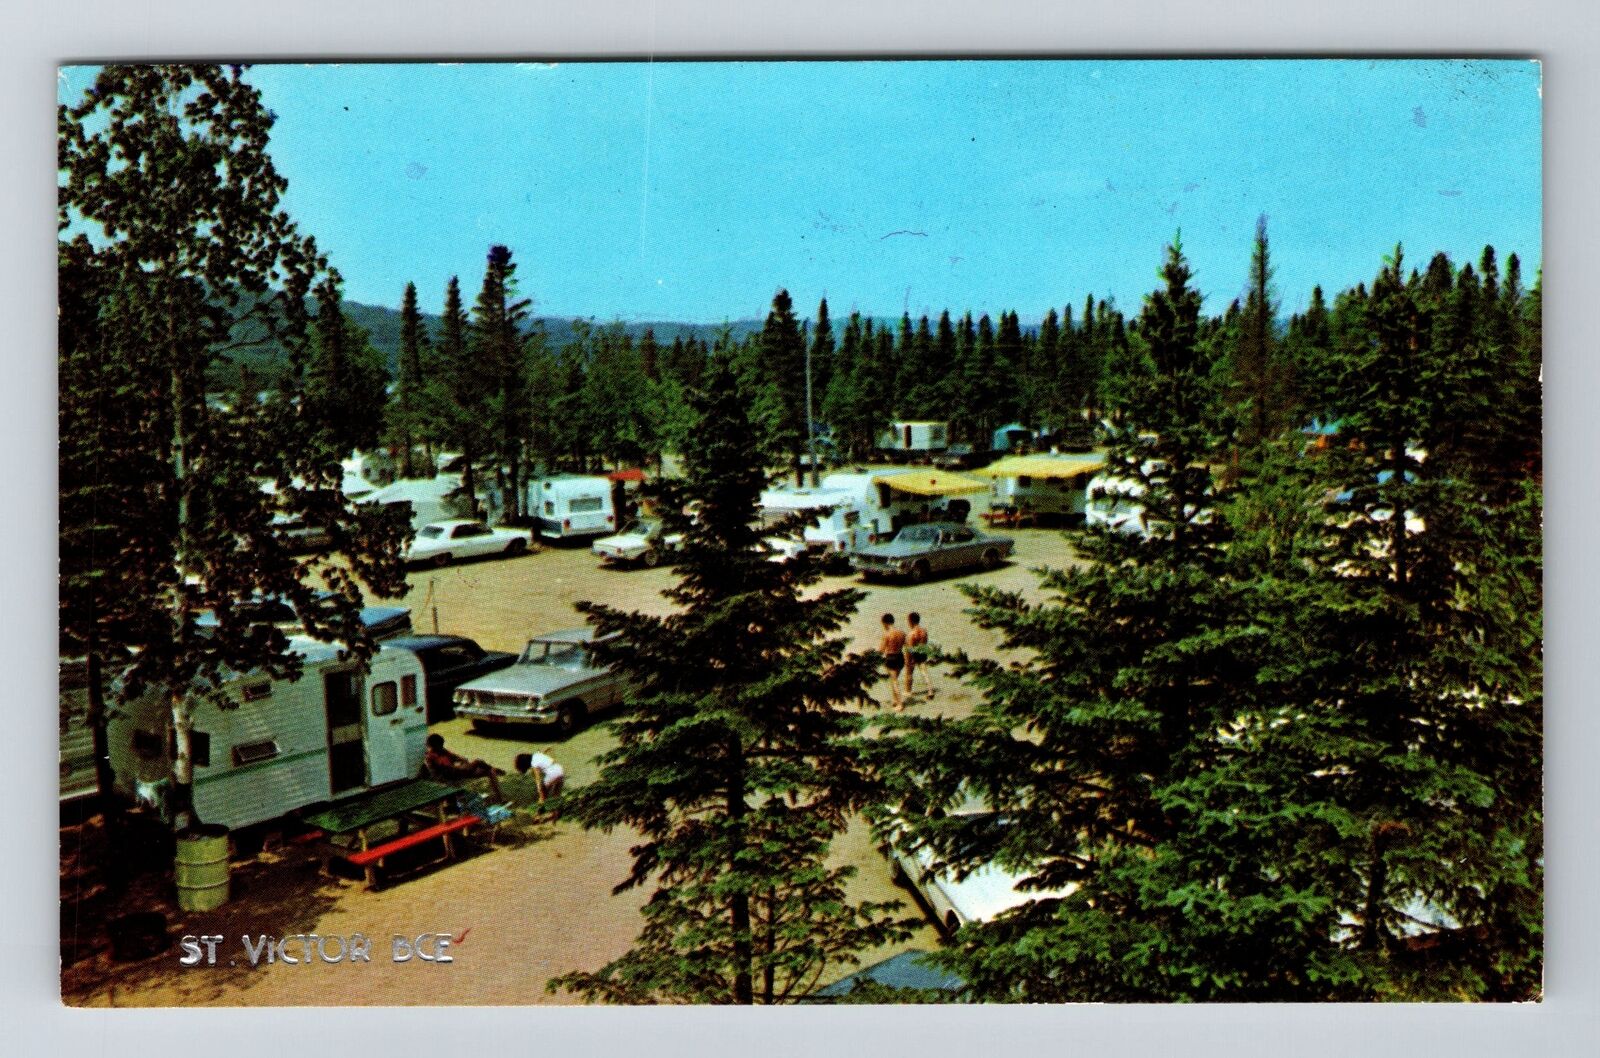 St Victor-Quebec, Camping, Campers, Vintage Postcard